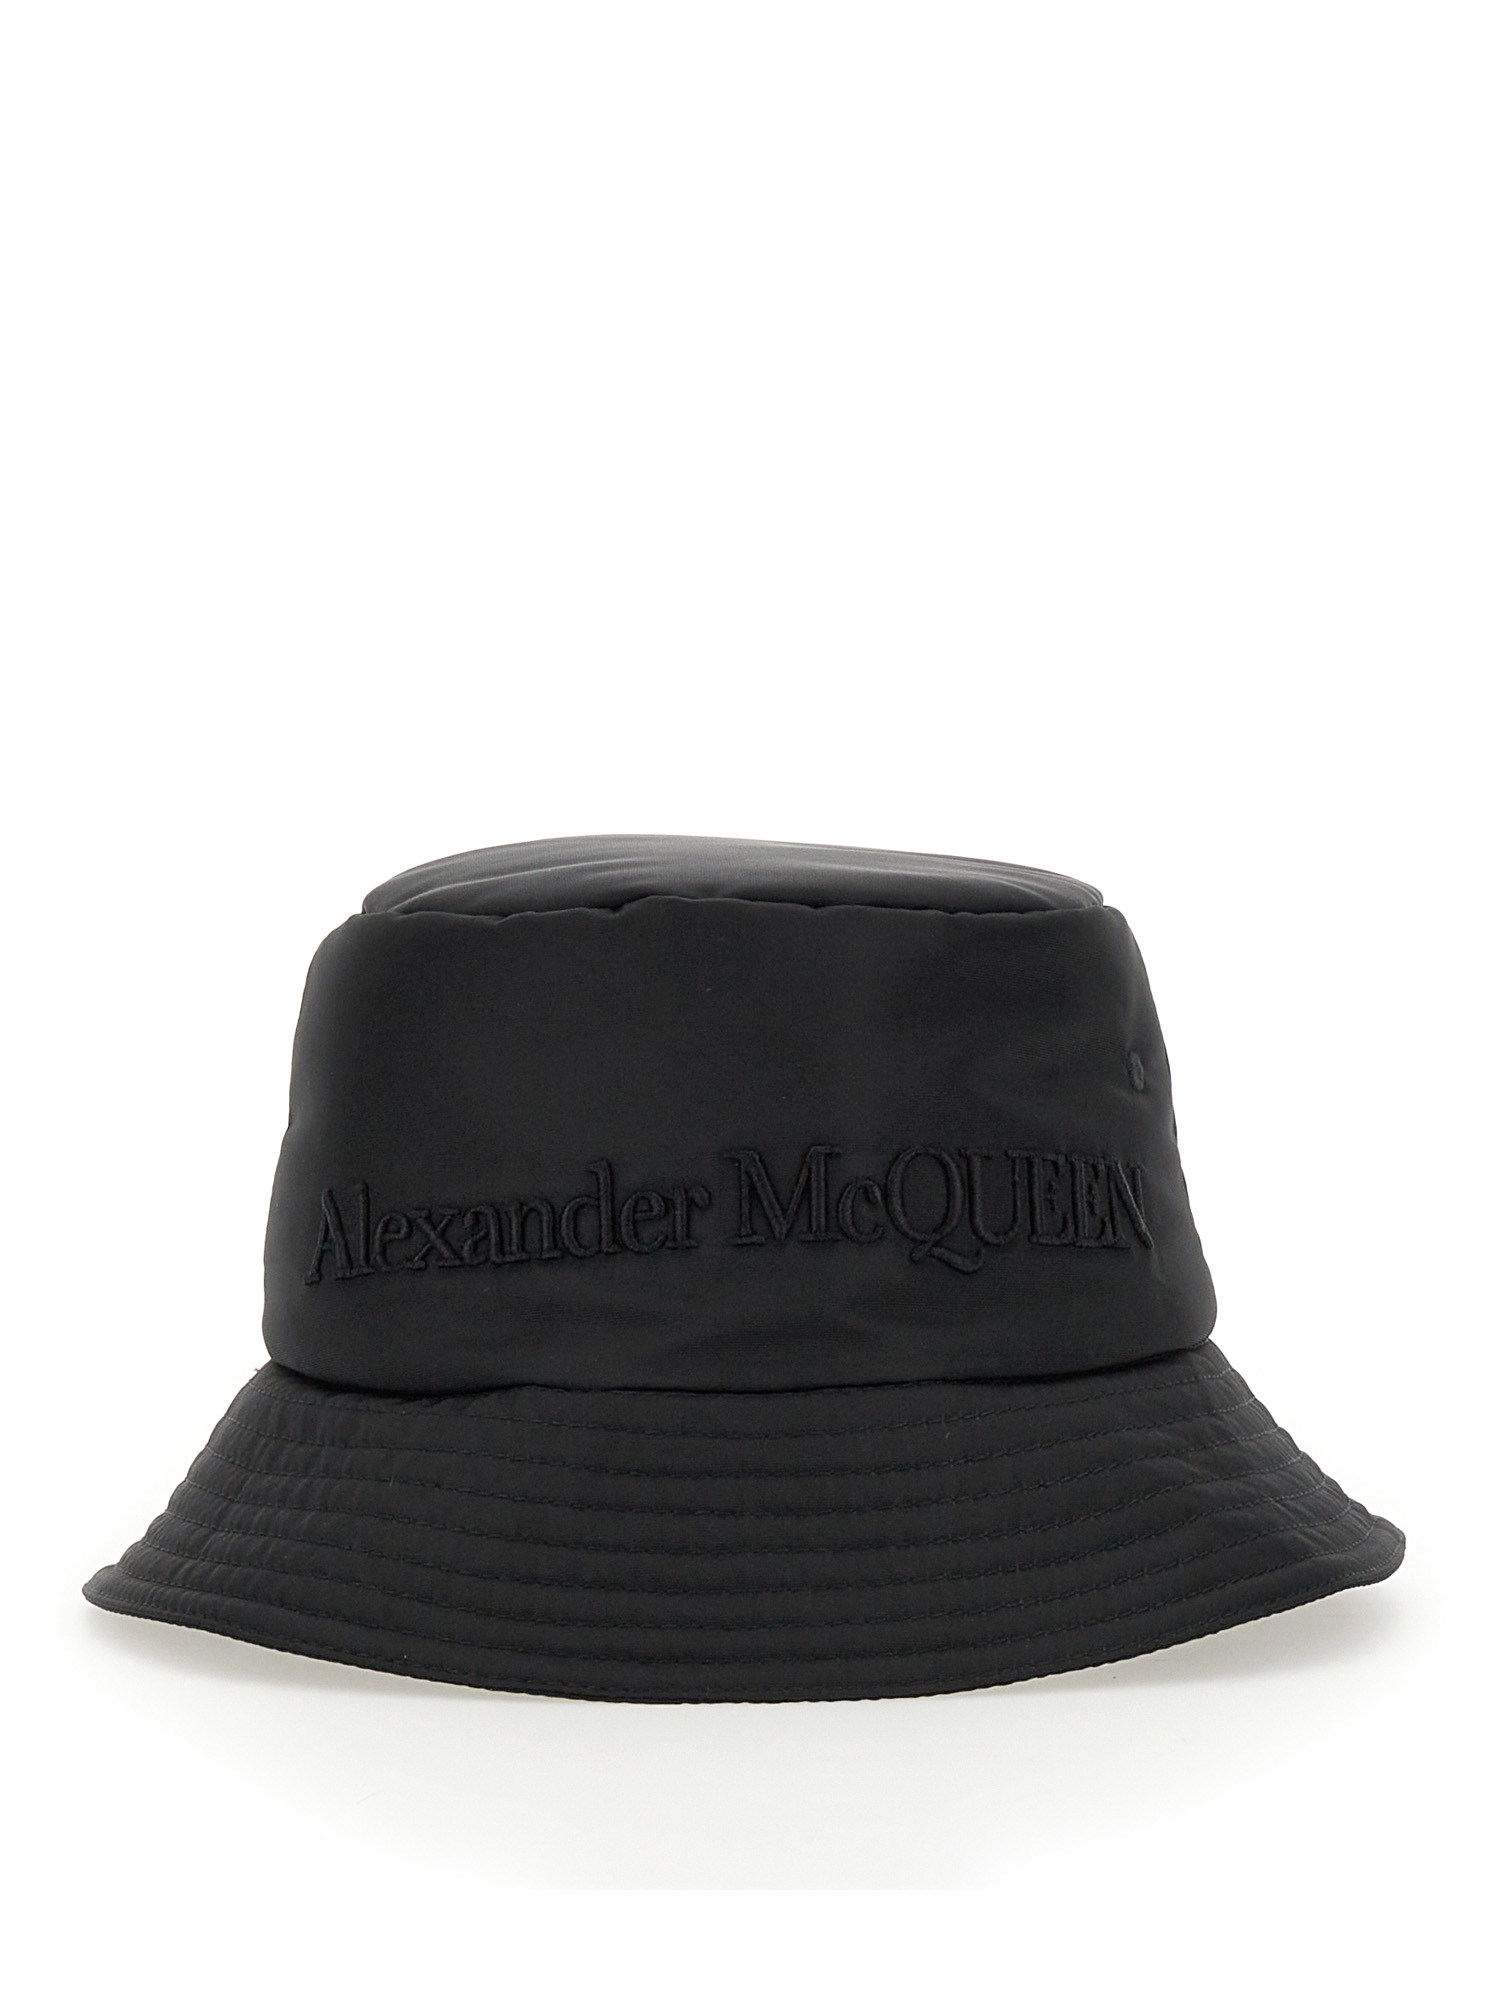 alexander mcqueen bucket hat with logo